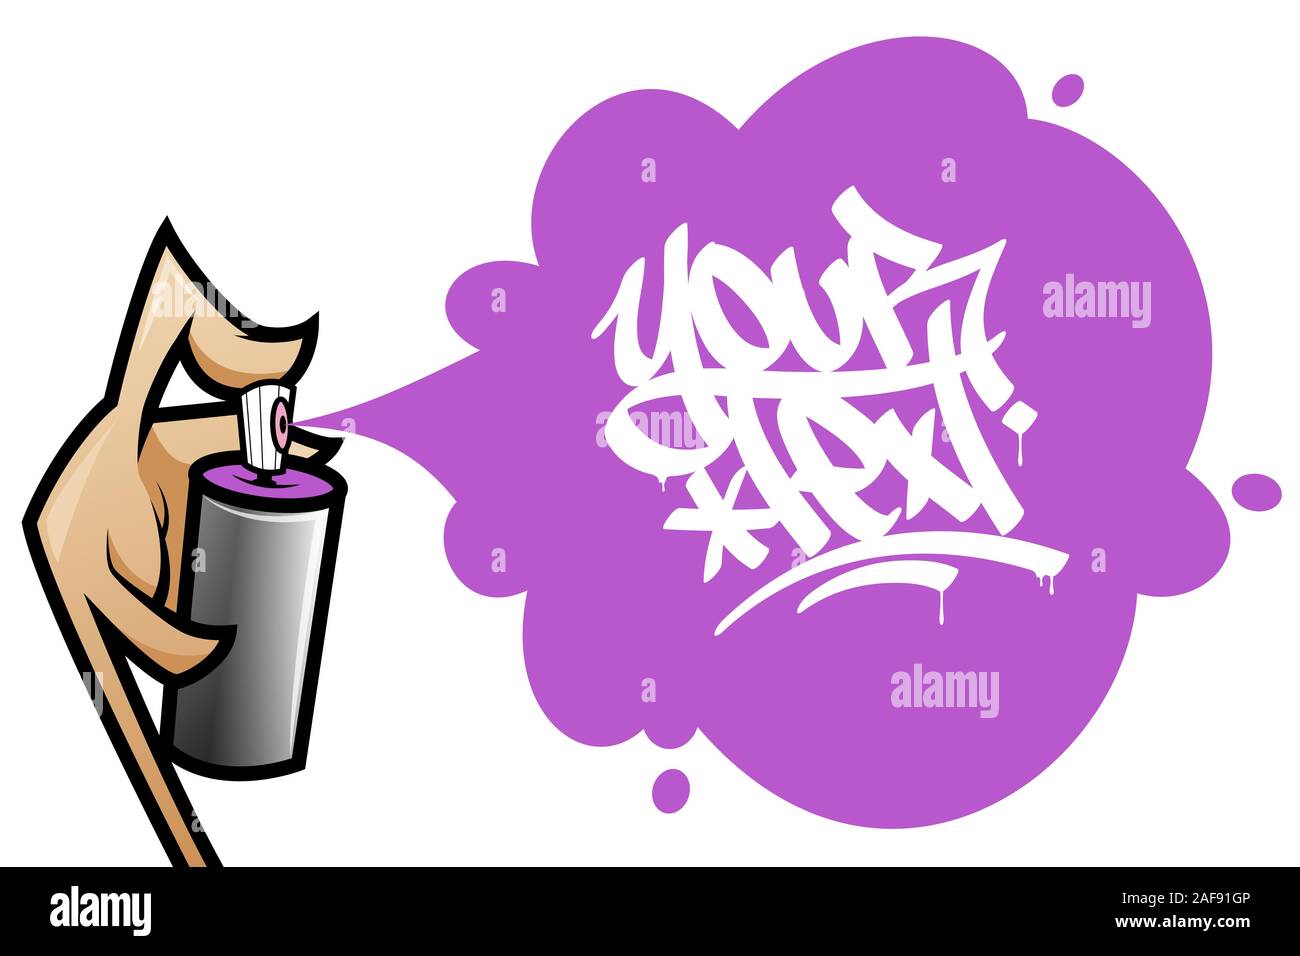 Cartoon hand mit der Sprühdose sprühen ein Graffiti malen Text Banner. Vector Illustration auf weißem Hintergrund. Stock Vektor